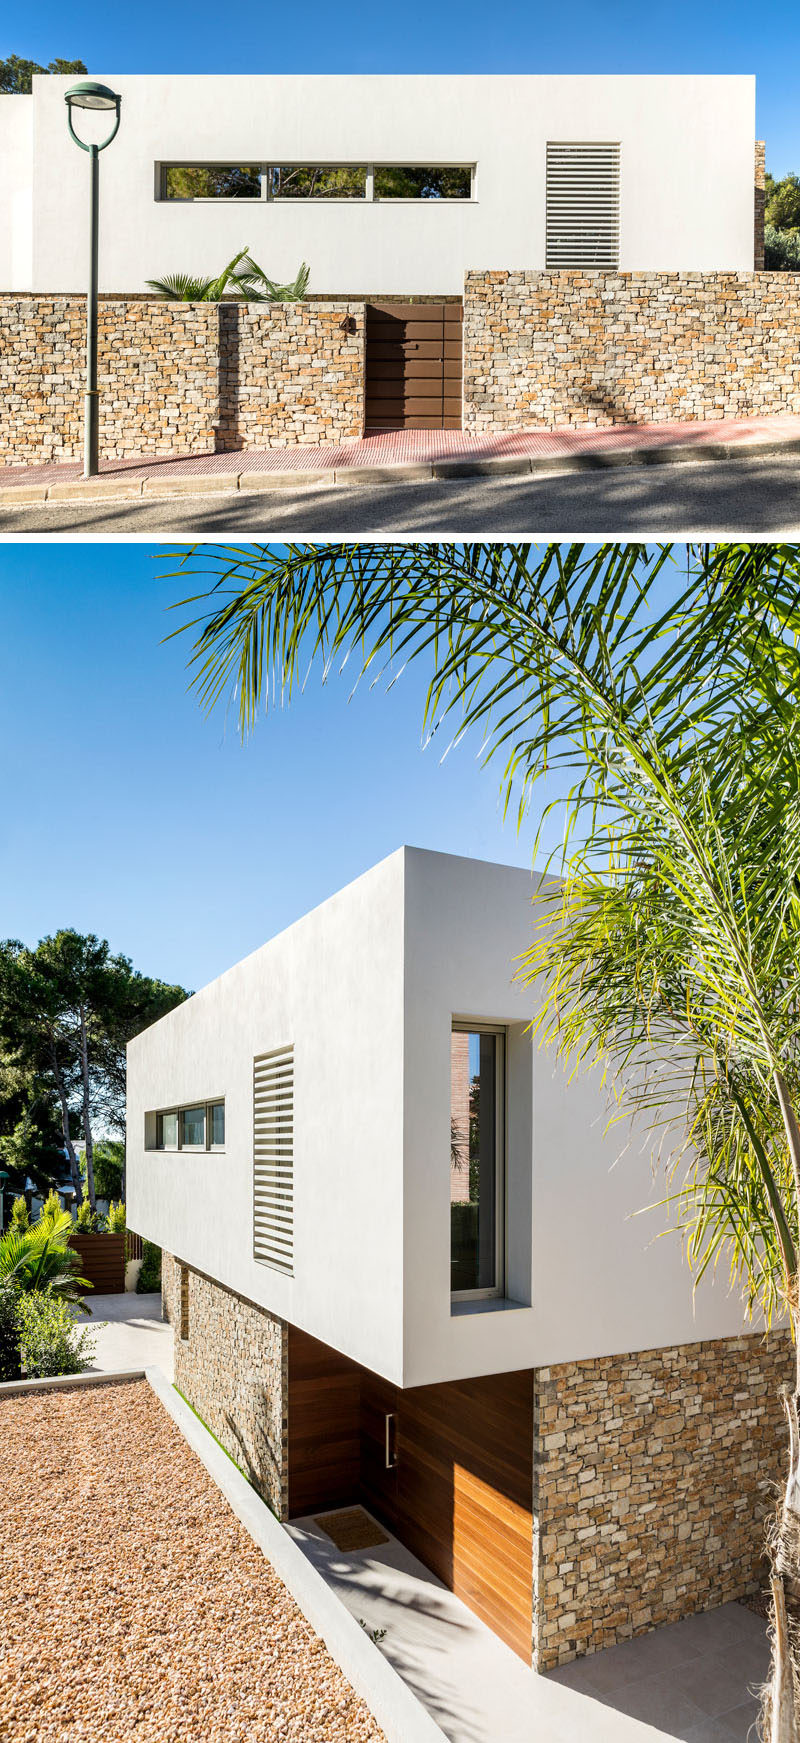 Пабло Серрано Элордуй из Dom Arquitectura недавно завершил проектирование нового современного дома в Таррагоне, город в Испании. #ModernHouse #HouseDesign #ModernArchitecture